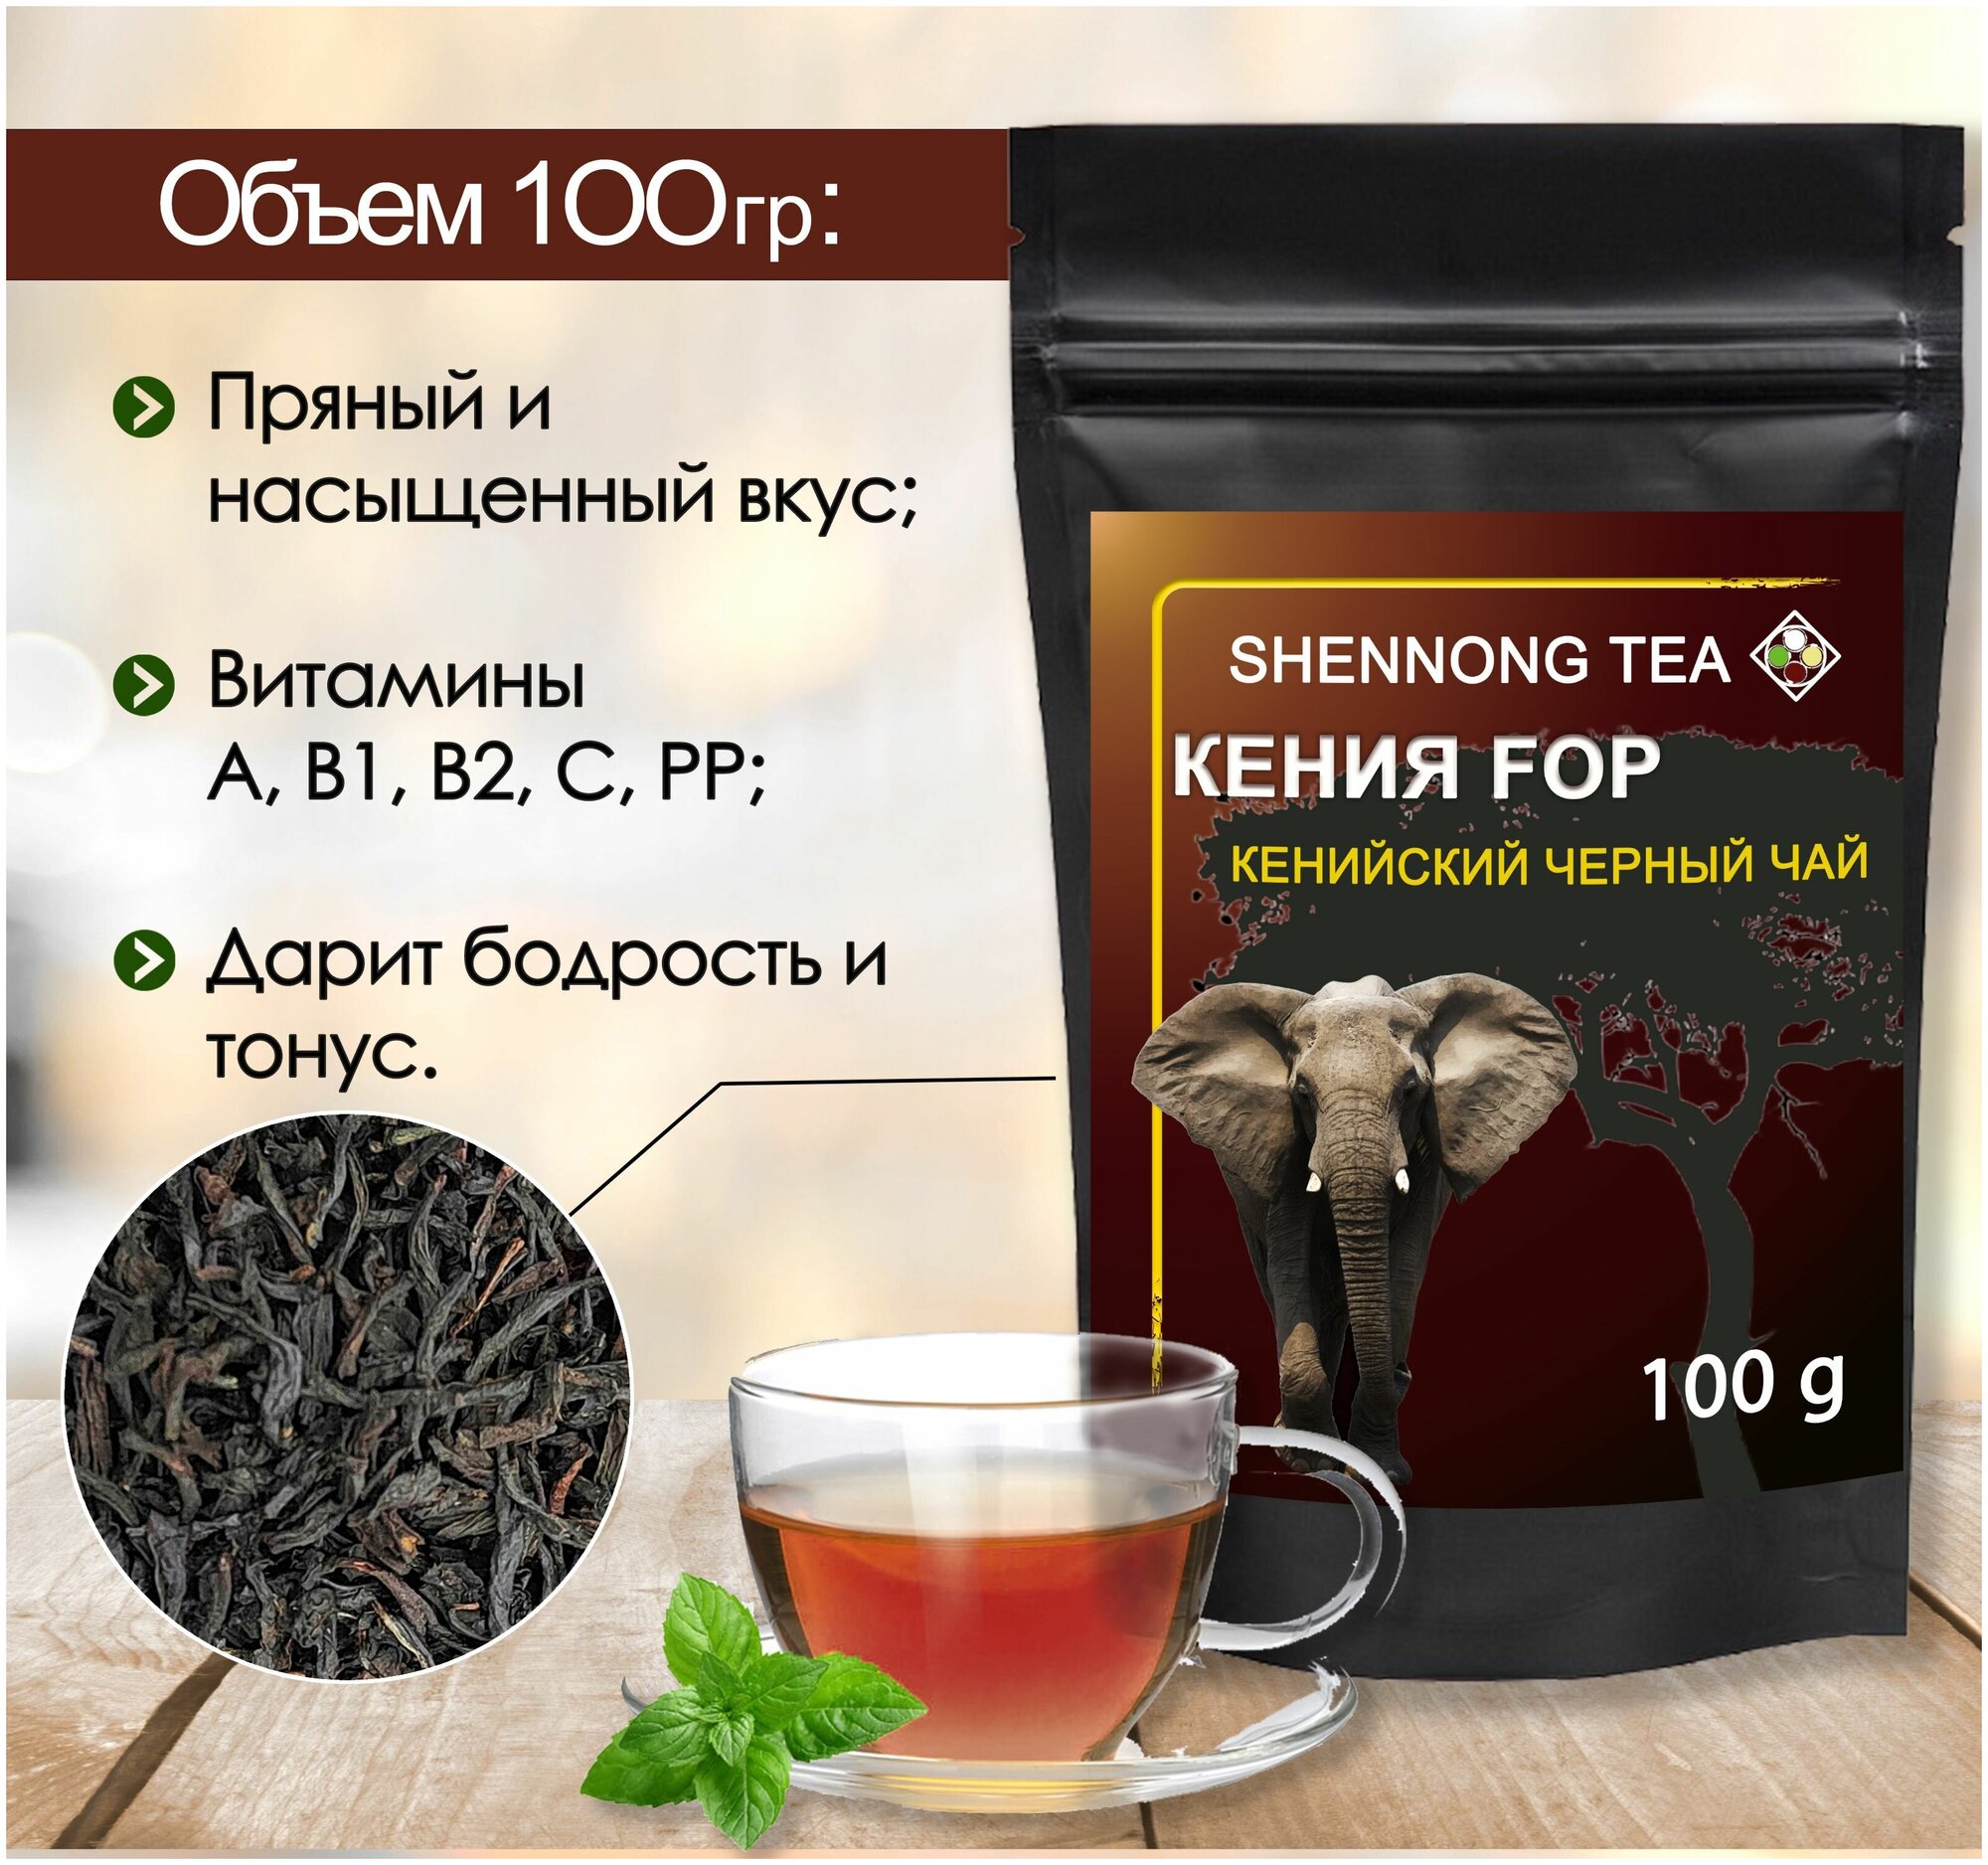 Настоящий Черный листовой Кенийский чай(Кения FOP), 100 грамм, от Shennong tea - фотография № 1